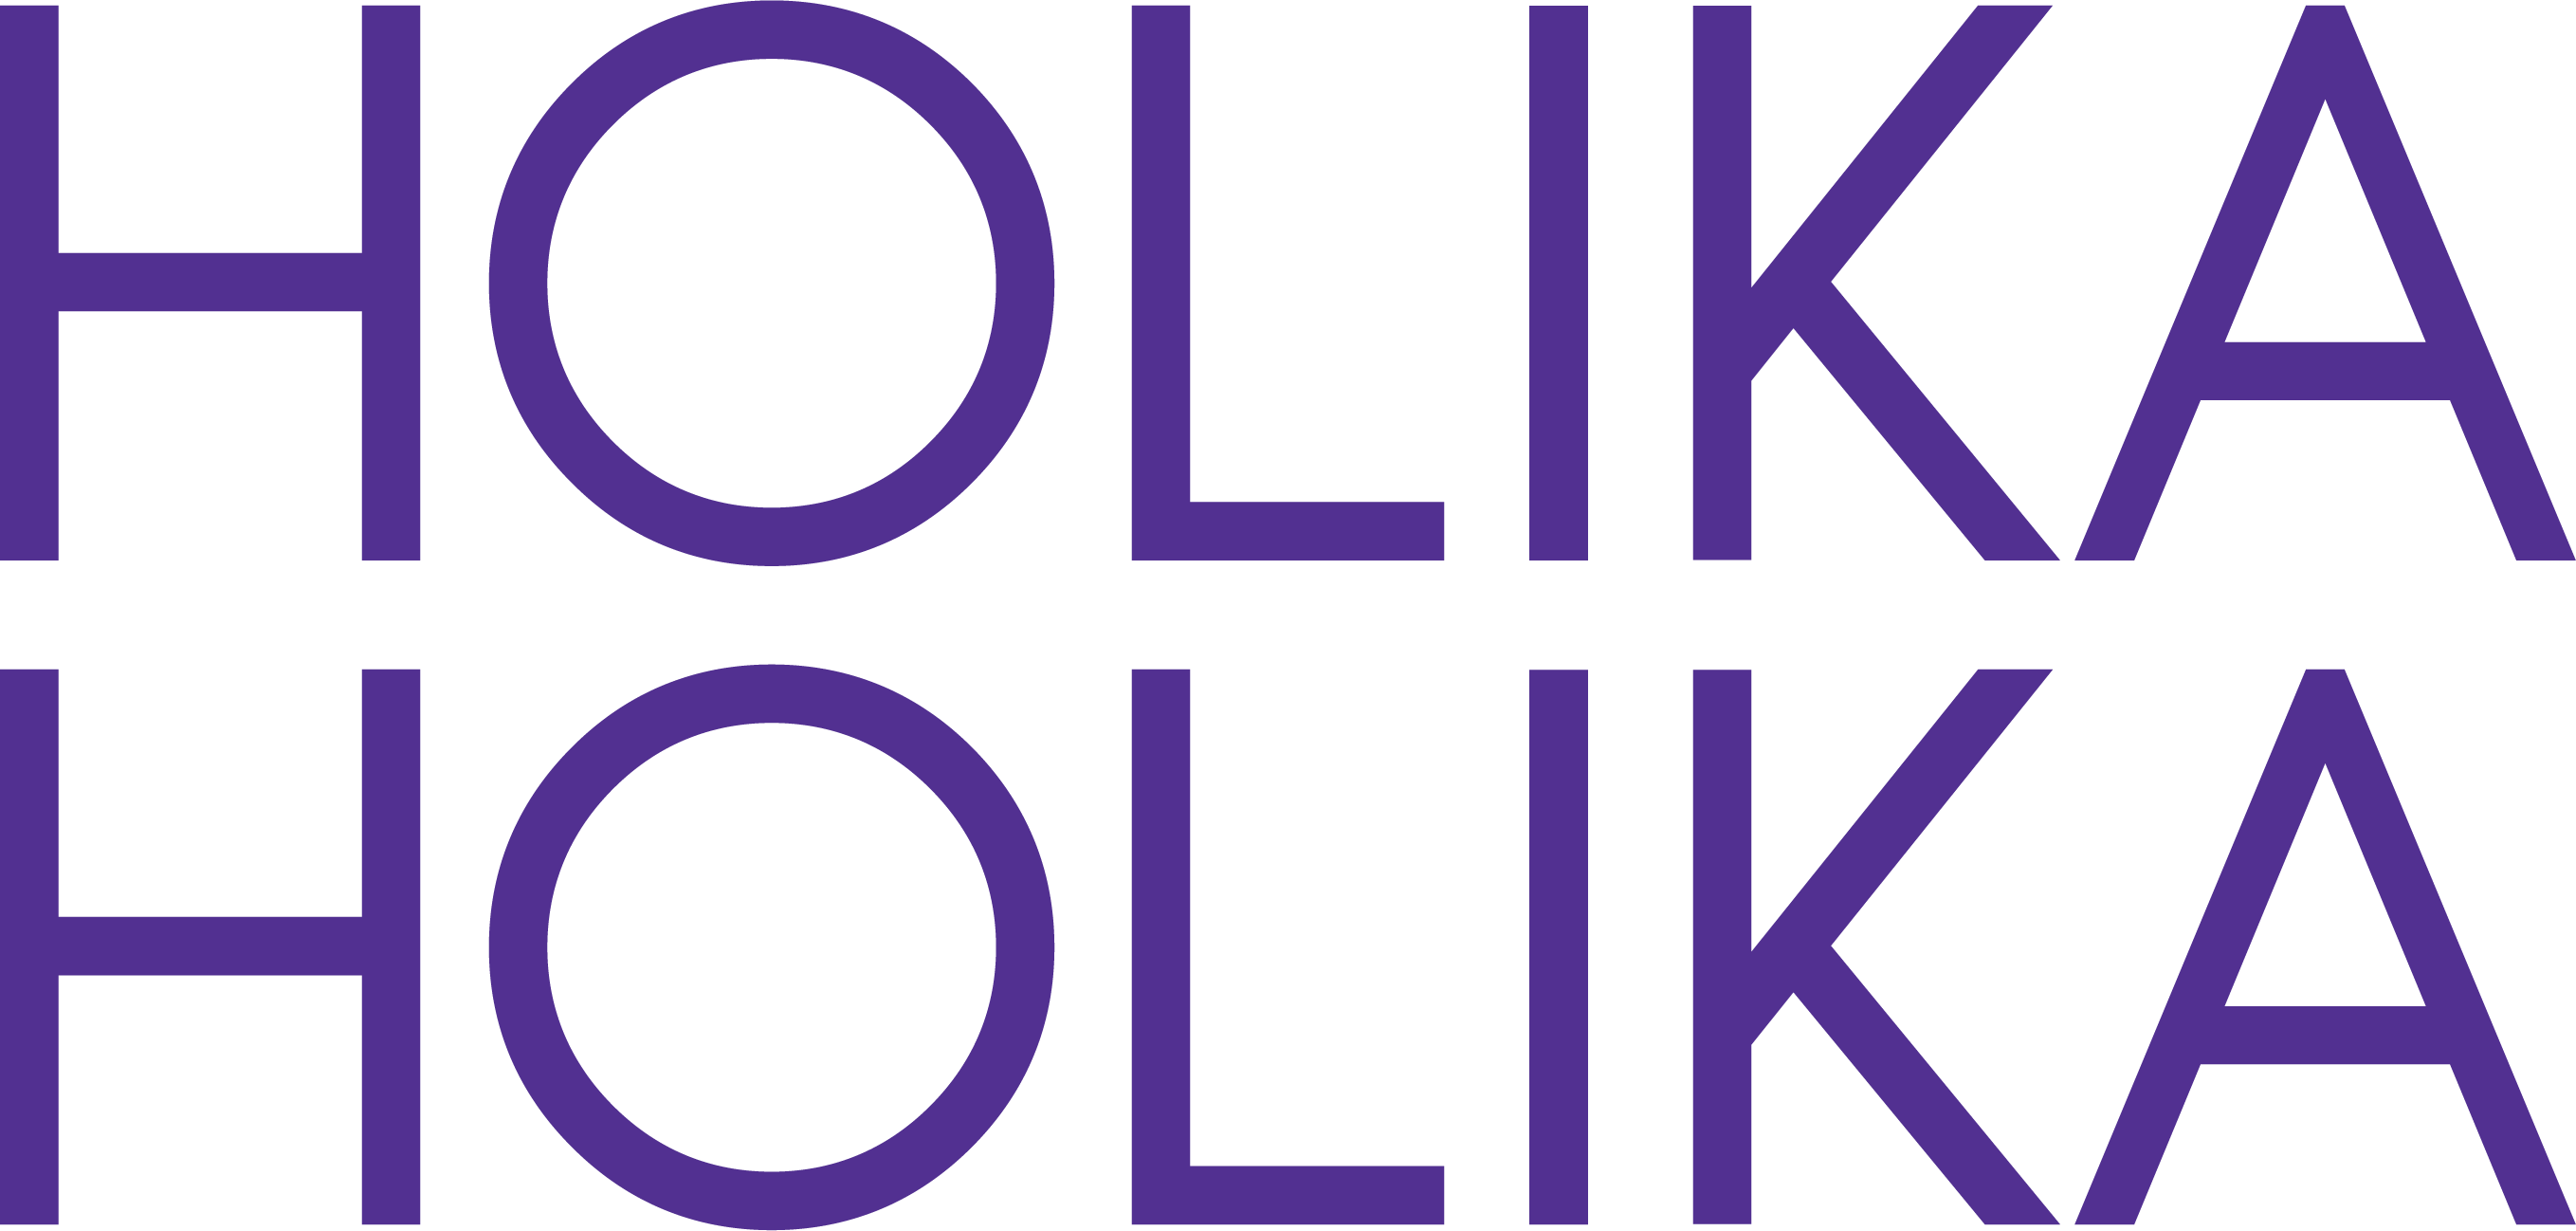 holika holika logo